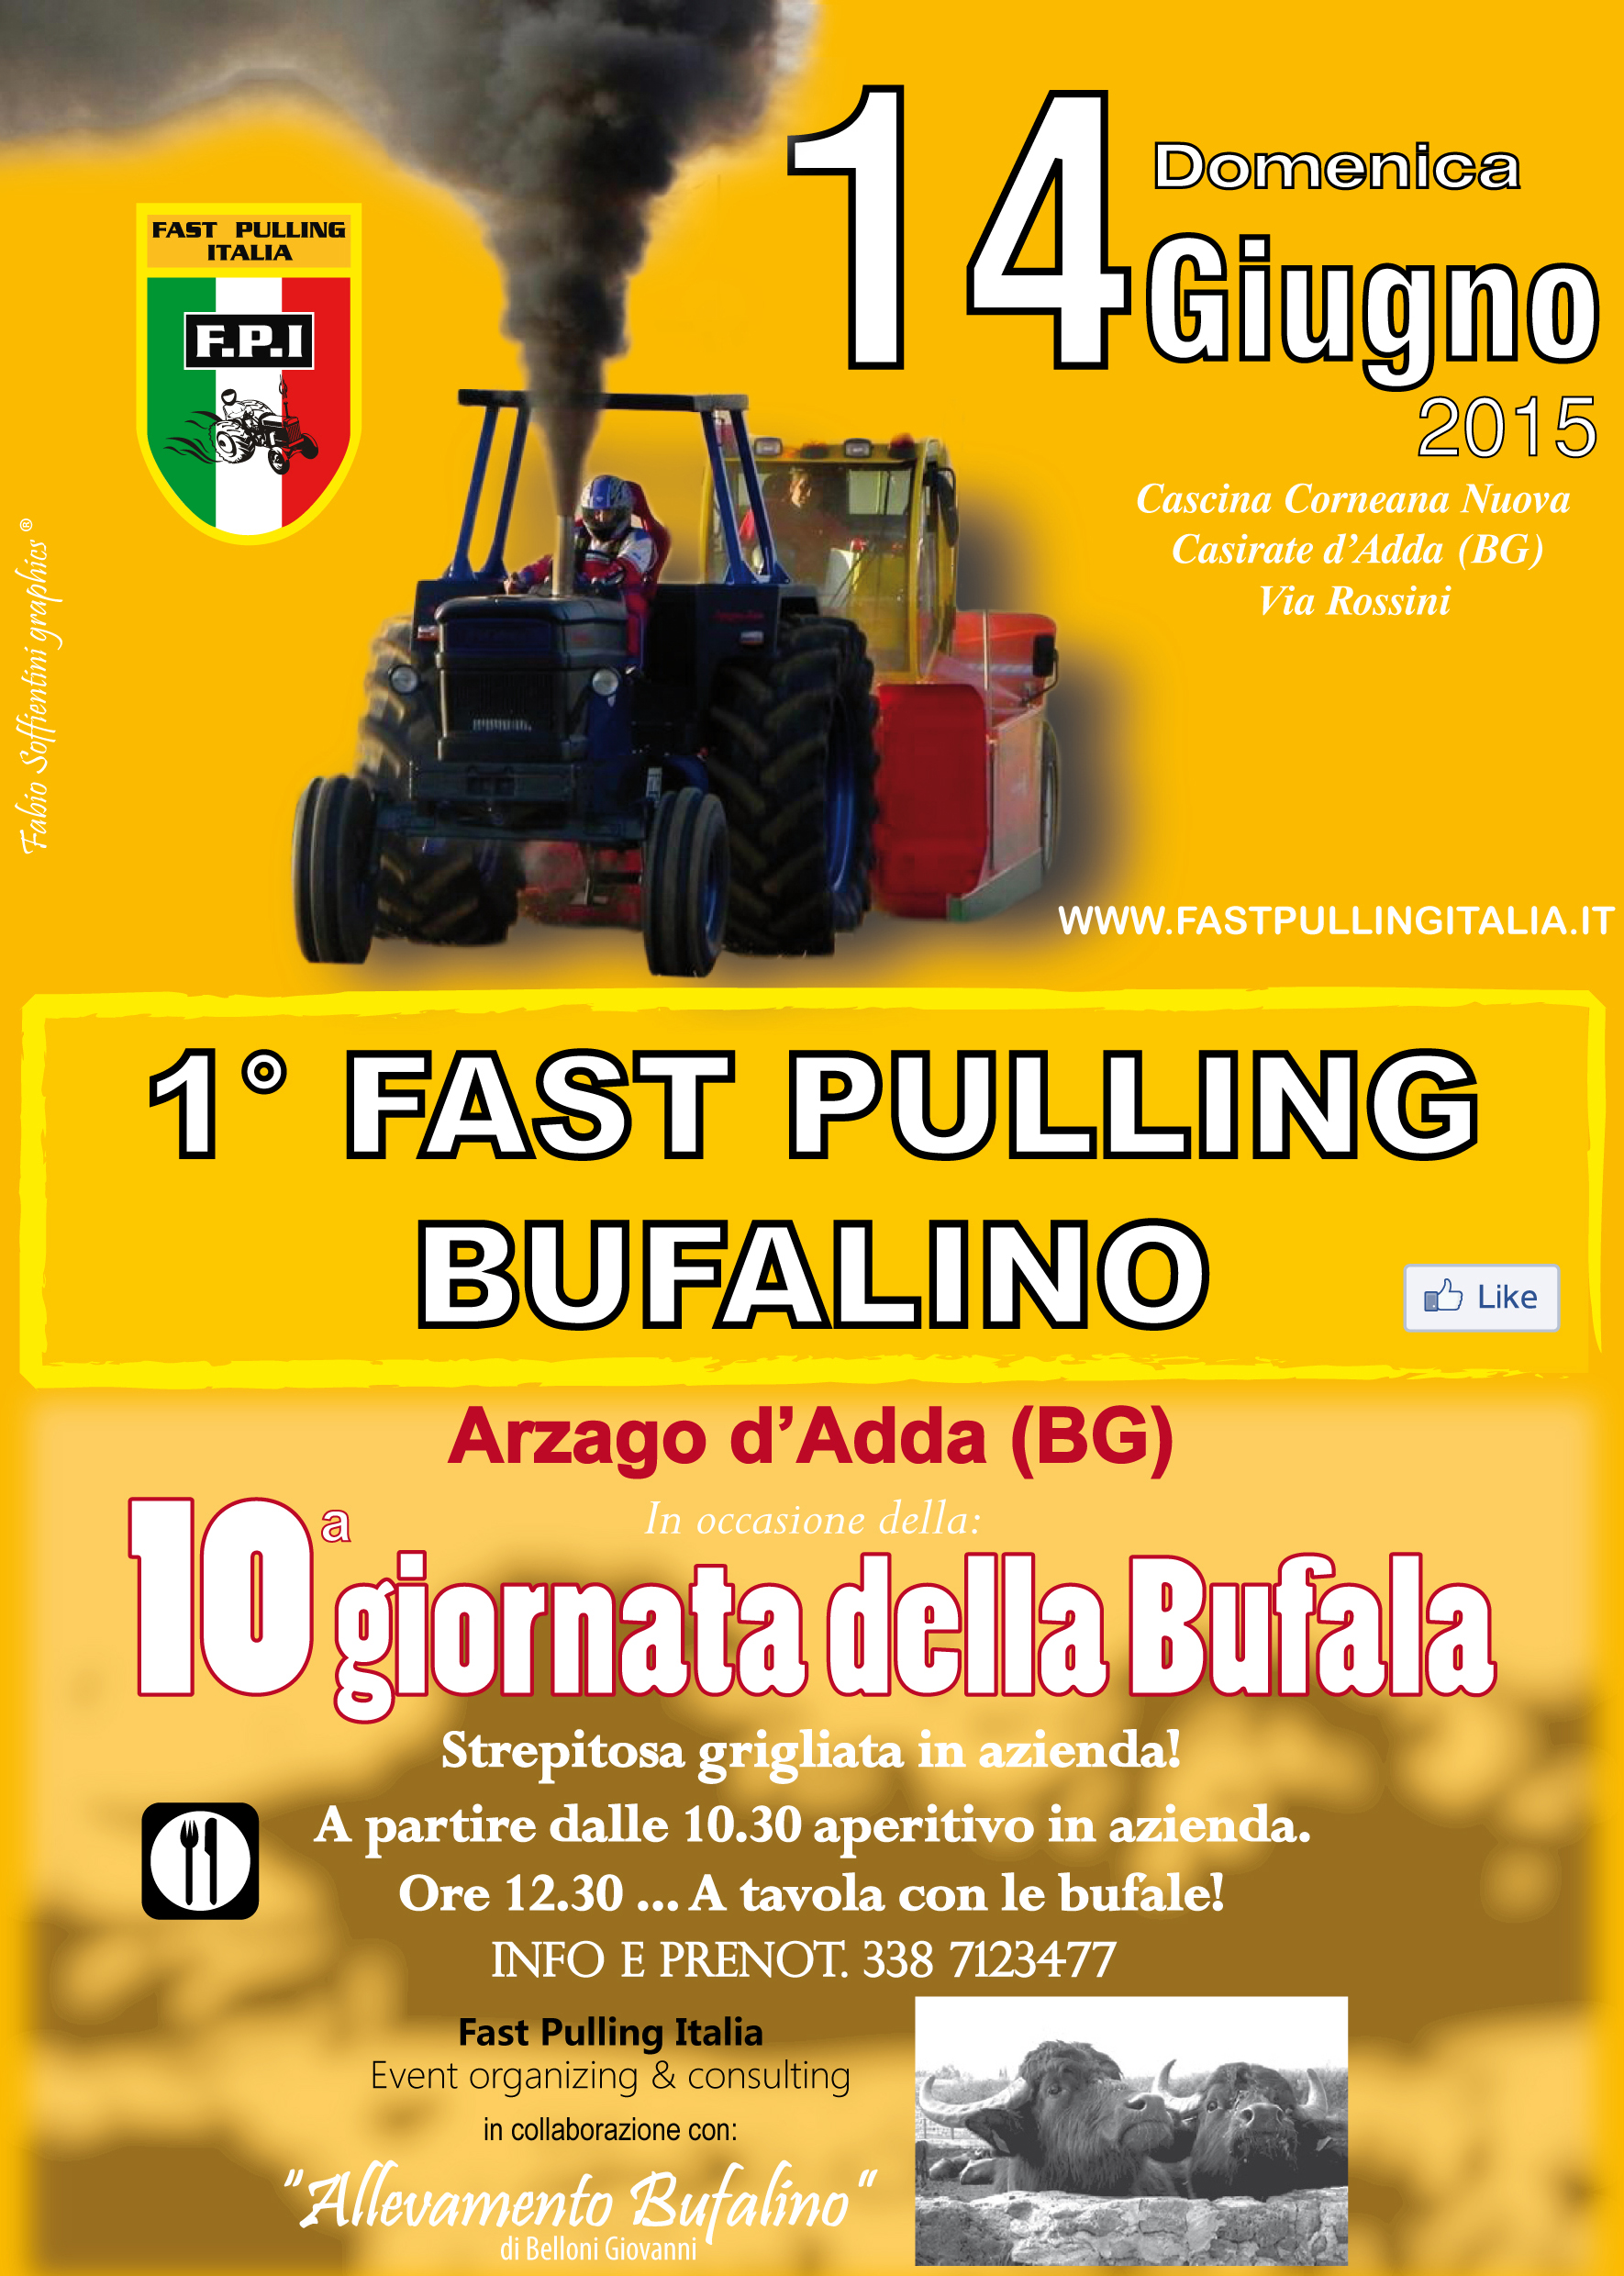 1° FAST PULLING BUFALINO - Arzago d'Adda (BG) - Domenica 14 Giugno 2015